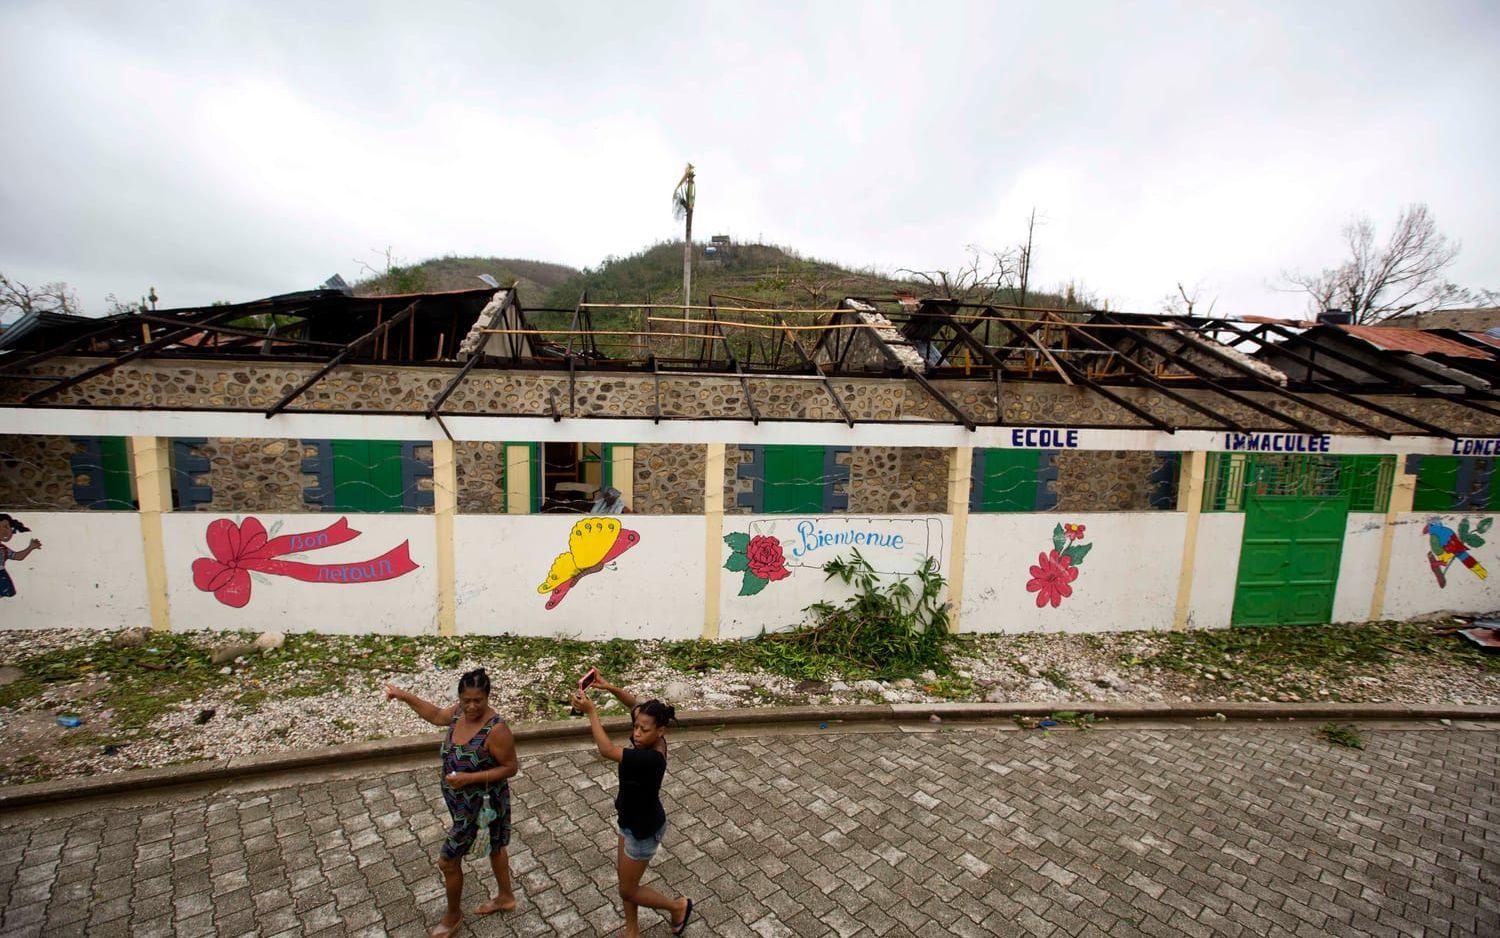 Förödelsen på Haiti. Bild: AP Photo